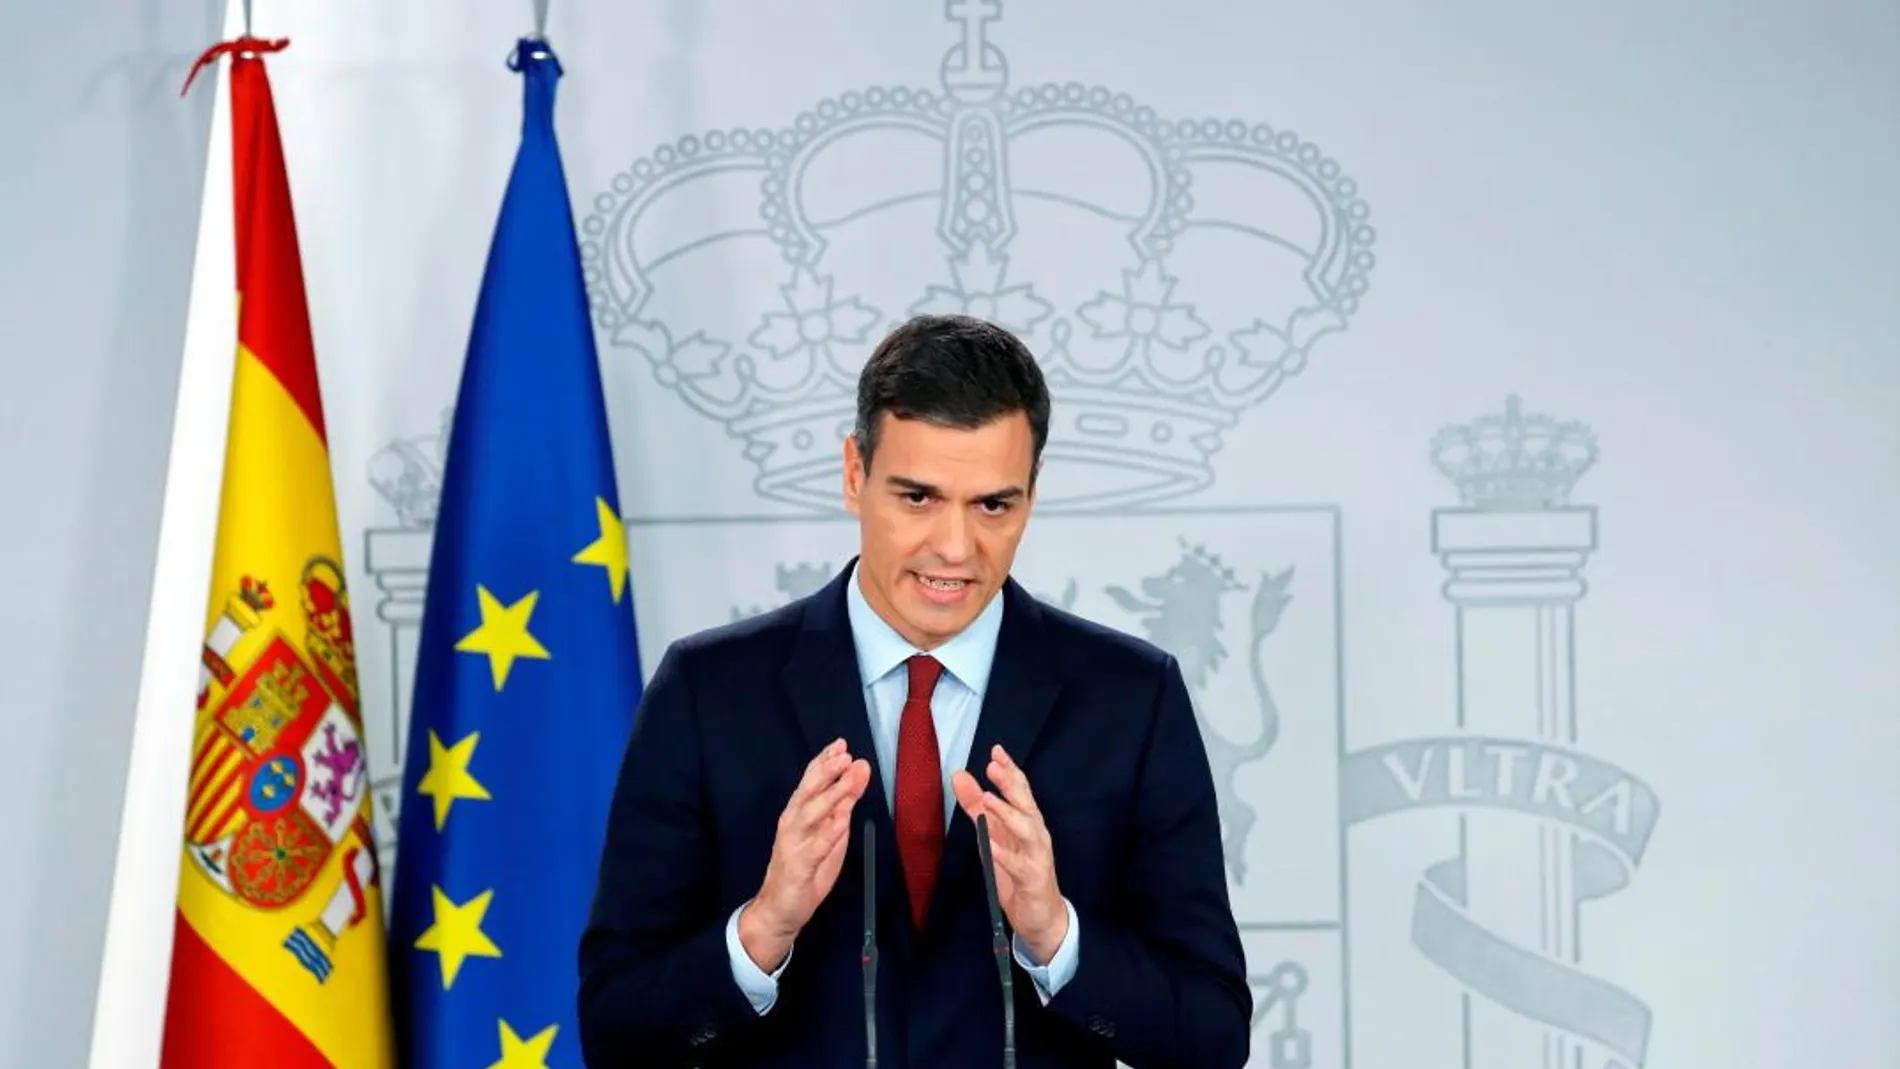 El presidente del Gobierno, Pedro Sánchez, en rueda de prensa donde ha anunciado hoy que España ha alcanzado un acuerdo sobre Gibraltar. EFE/SErgio Barrenechea